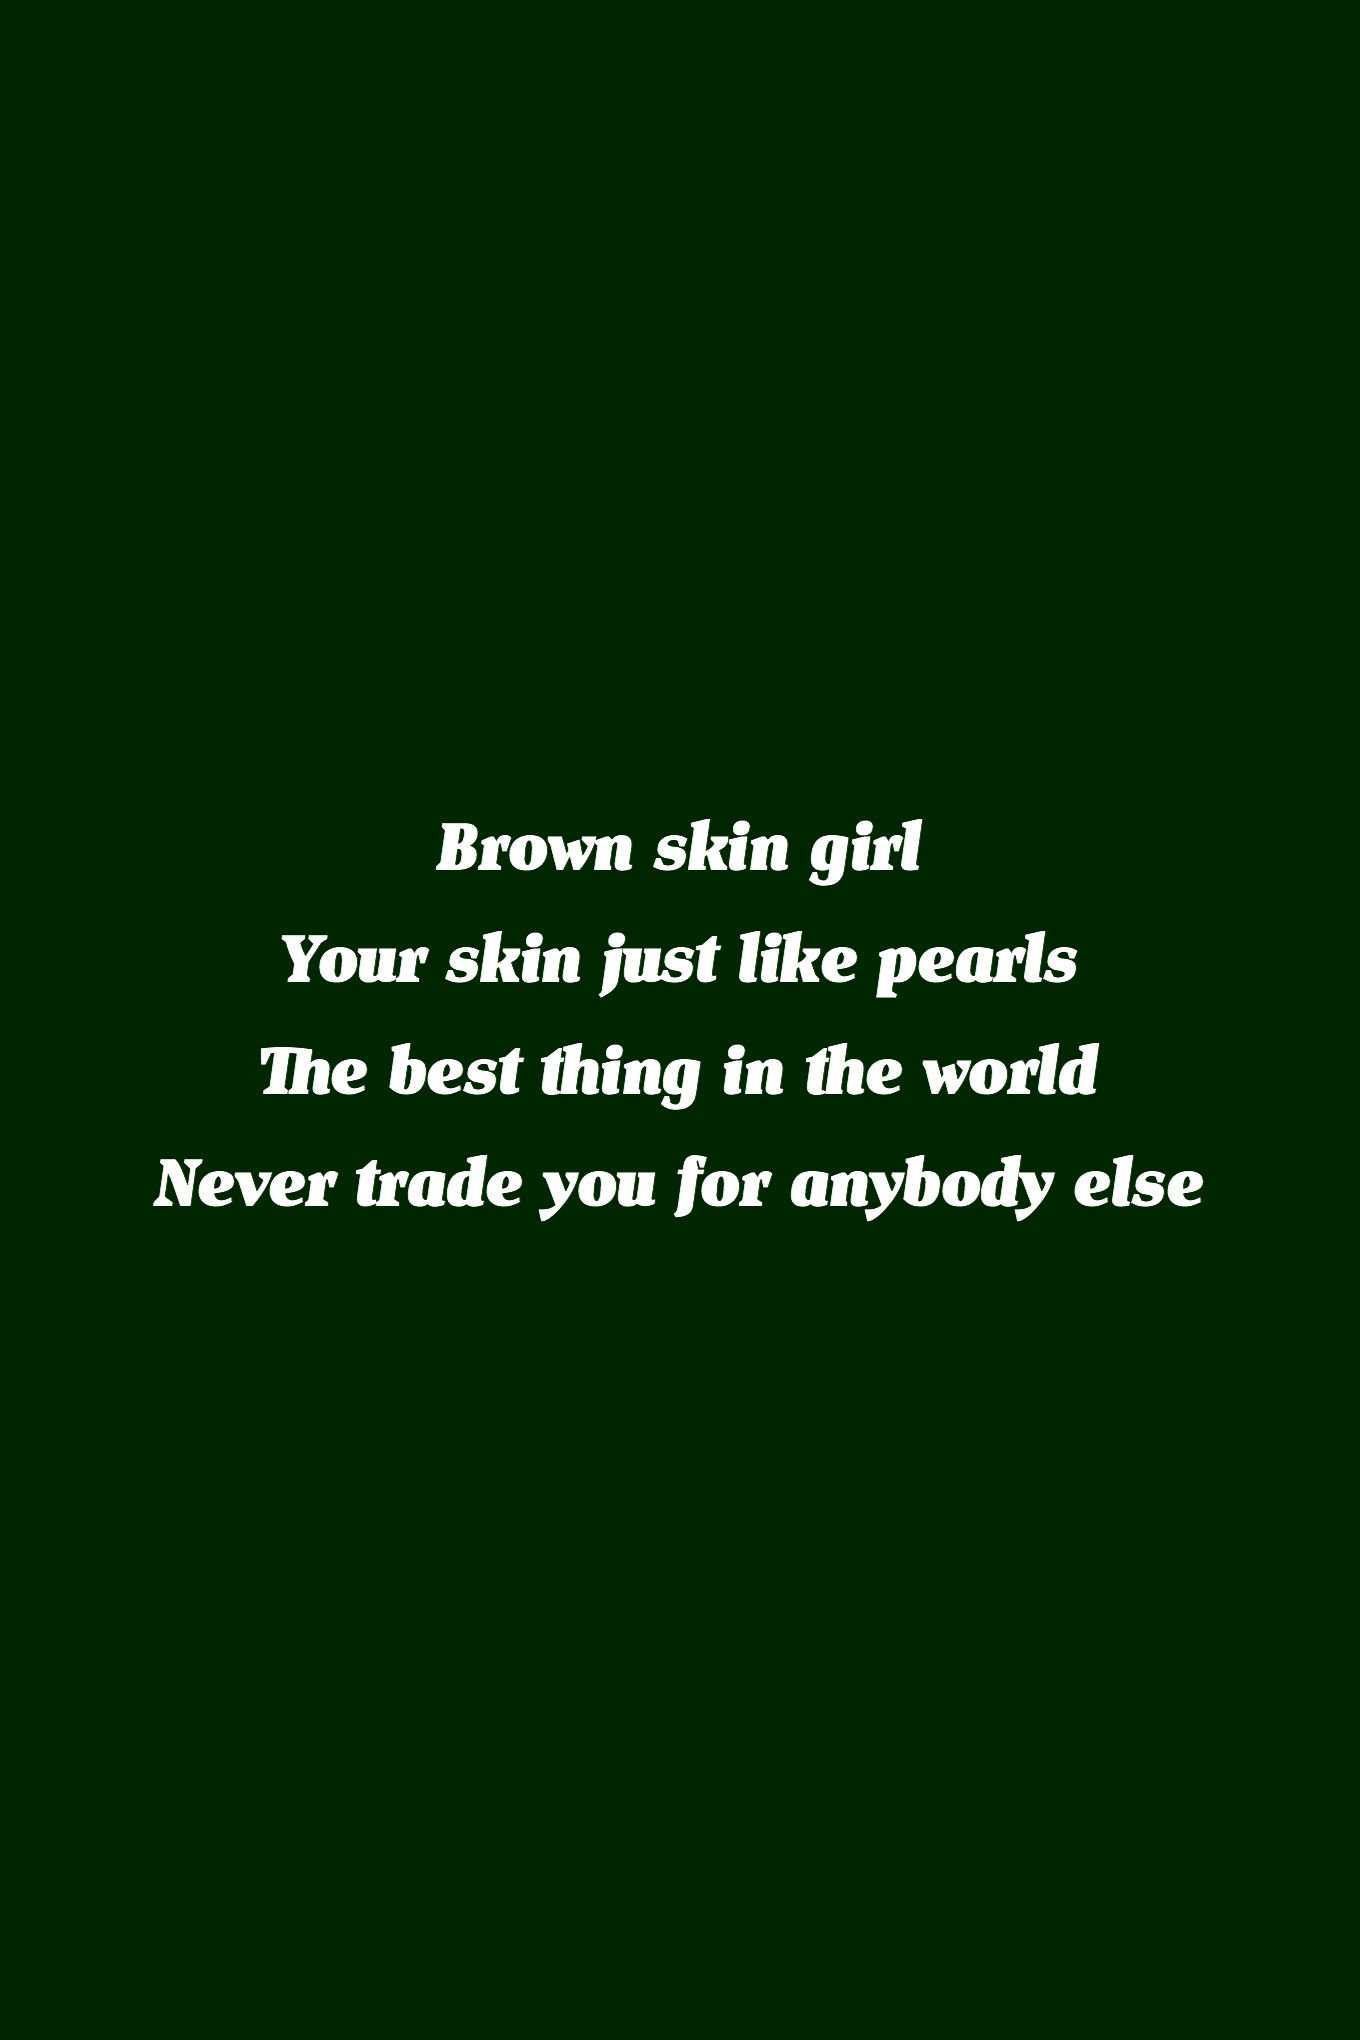 brown skin girl// beyonce. Black girl quotes, Brown skin girls